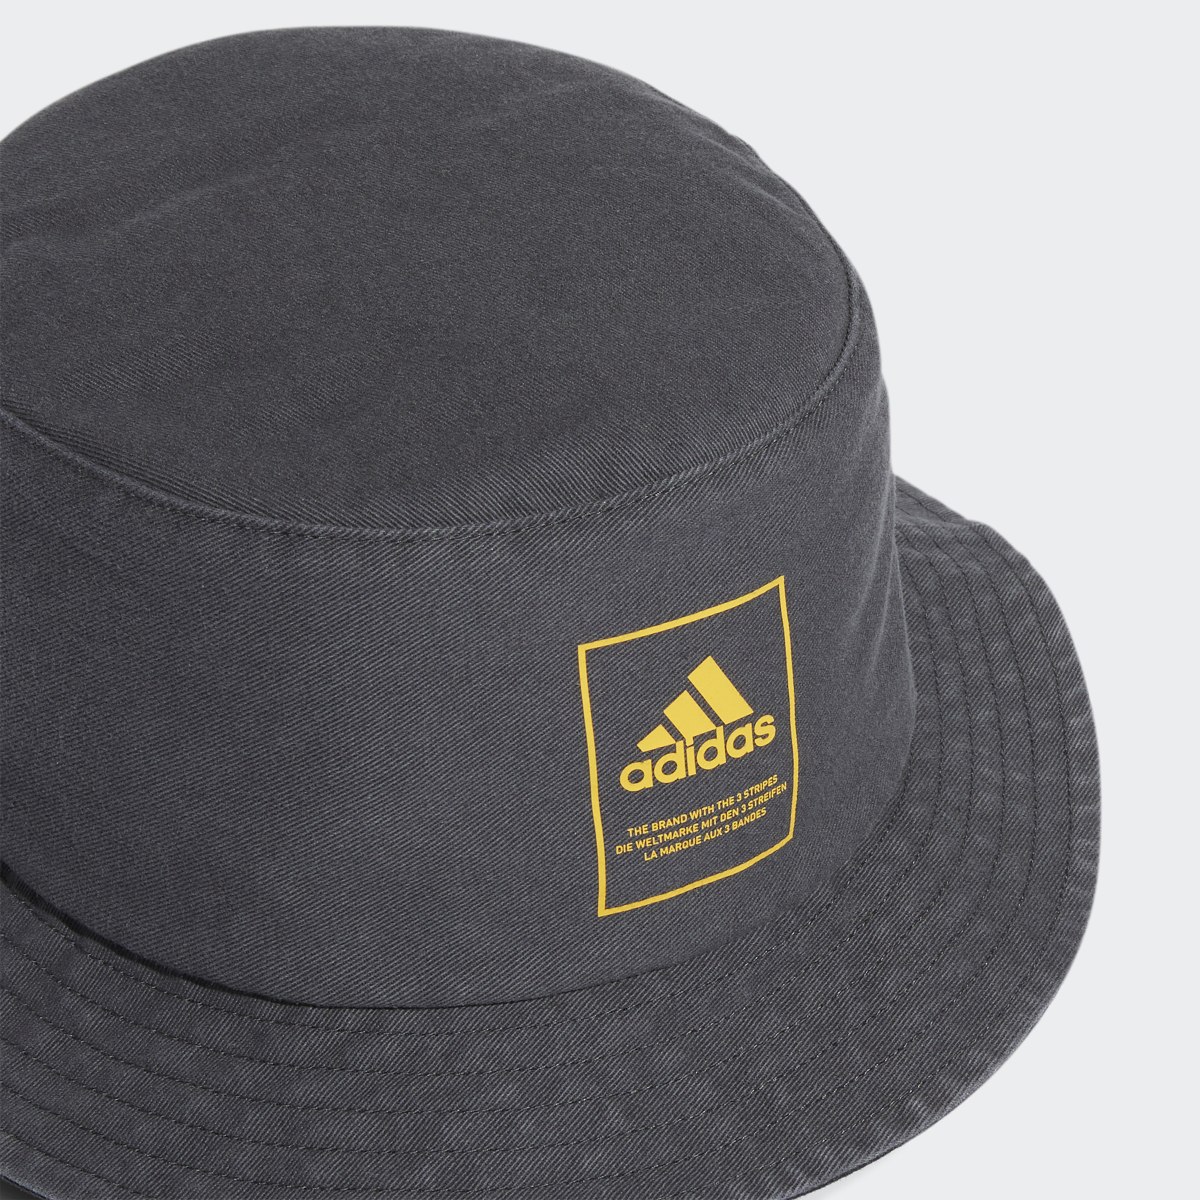 Adidas Lifestyle Washed Bucket Hat. 6